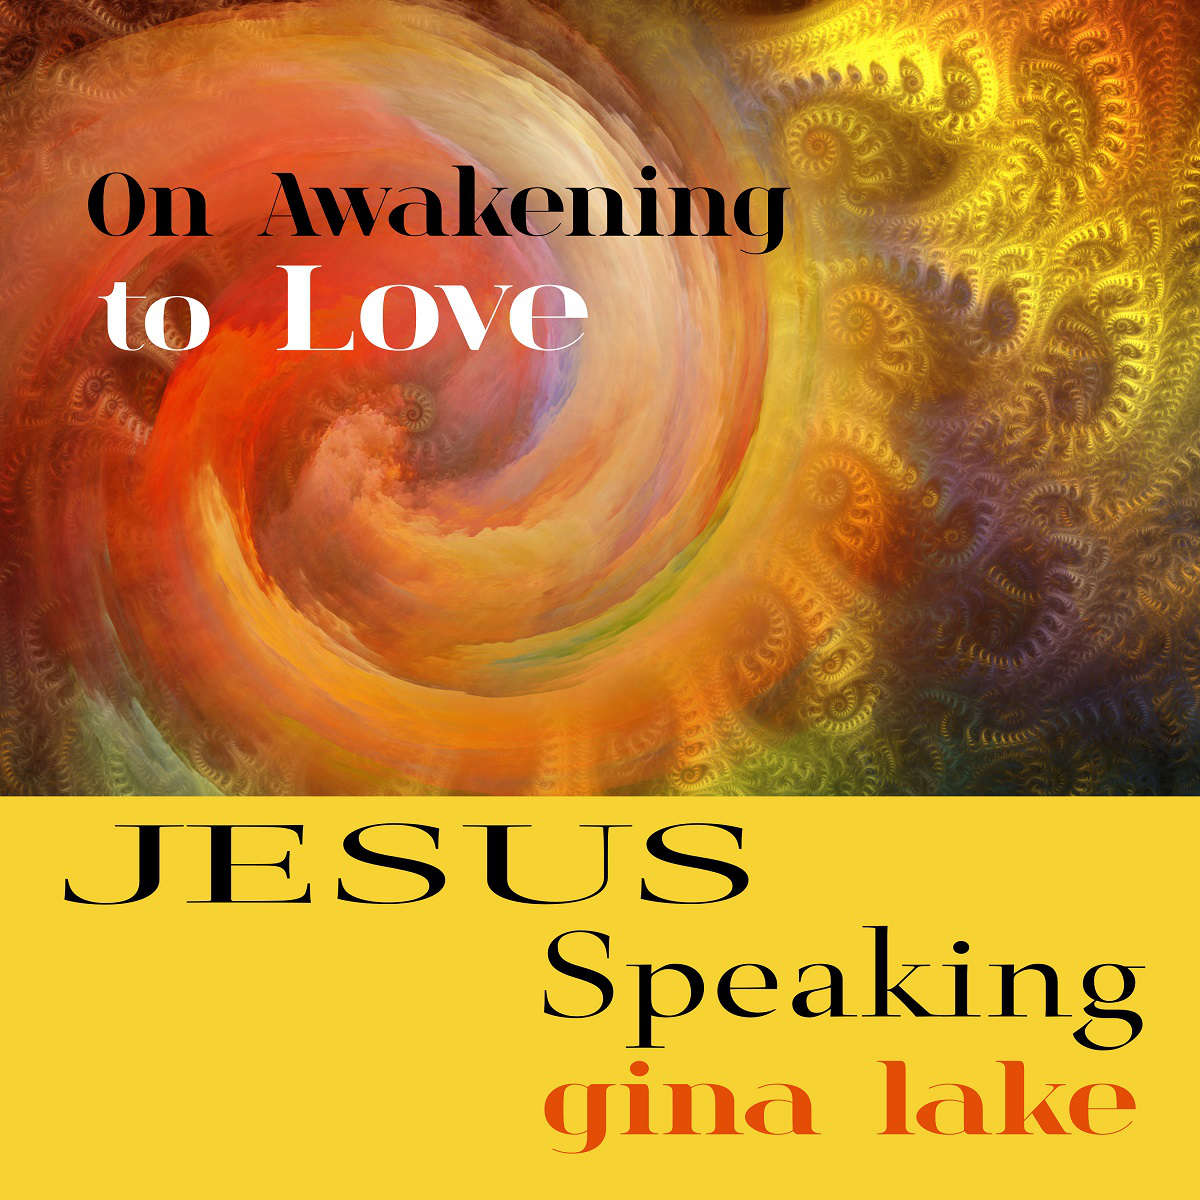 Jesus Speaking 3 on Awakening to Love by Gina Lake